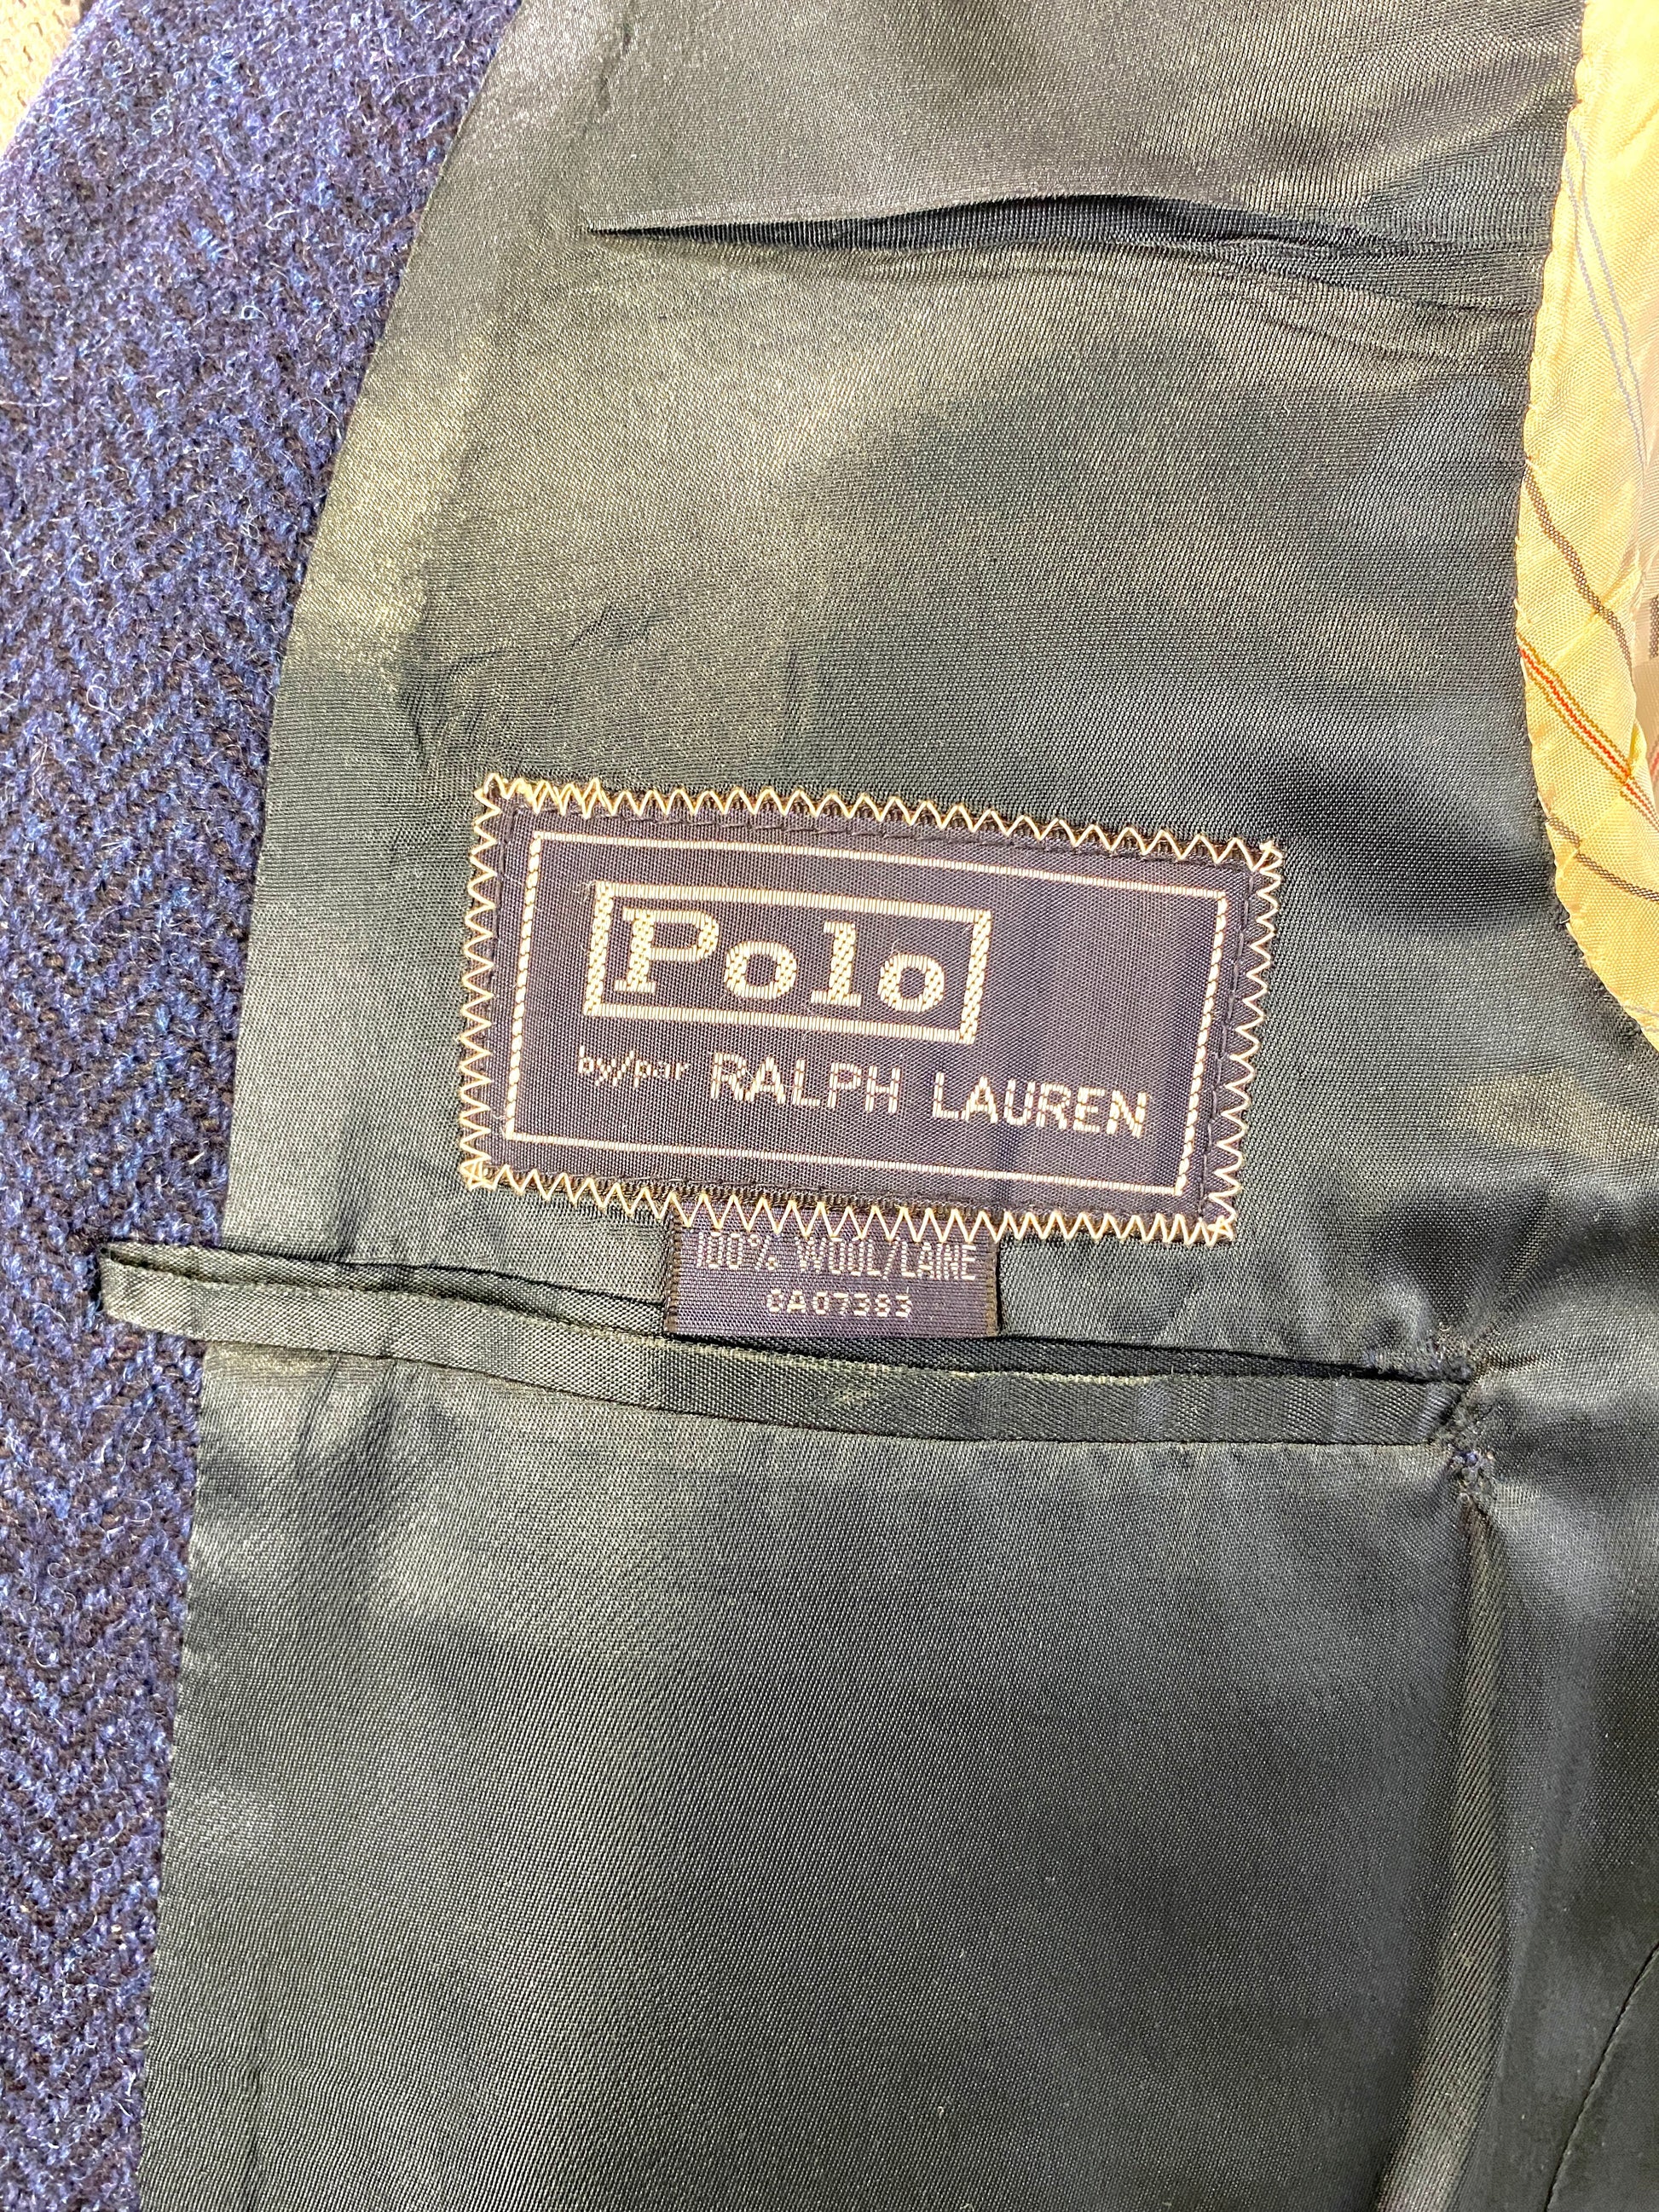 1980s Vintage Wool Herringbone Navy Men's Blazer, Polo Ralph Lauren Pocket Crest, C42S